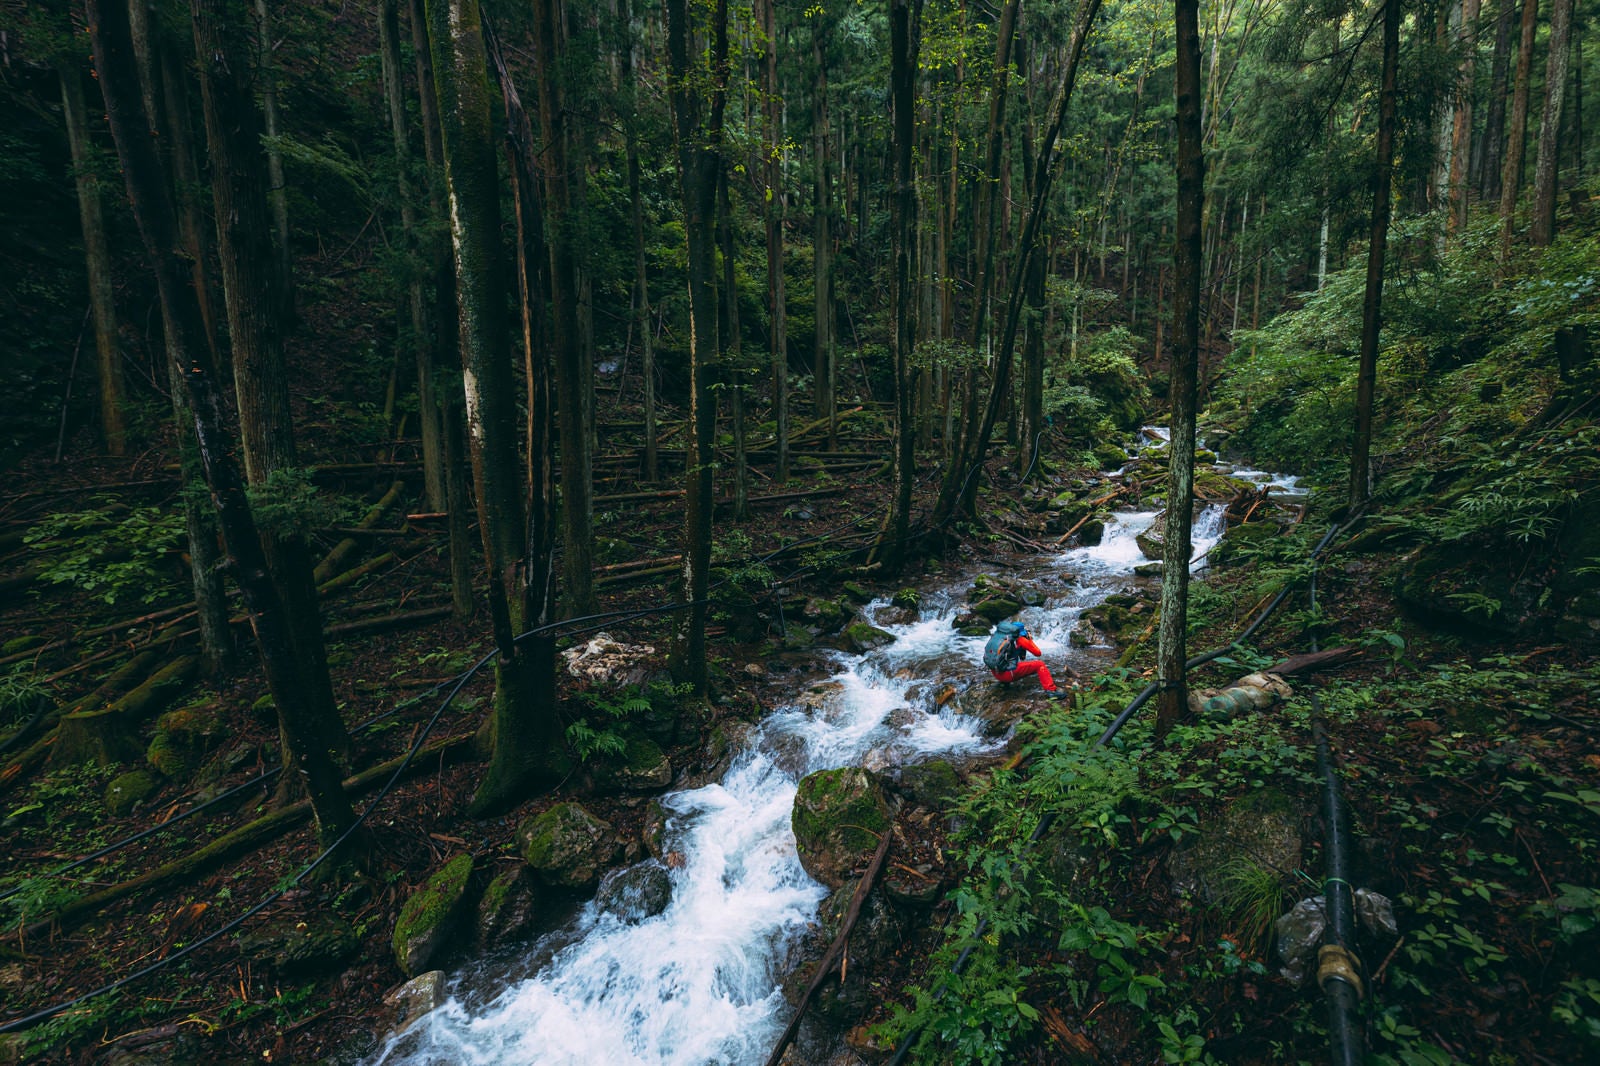 「豪雨の後の渓流を撮影するカメラマンと倒木の数々 | フリー素材のぱくたそ」の写真